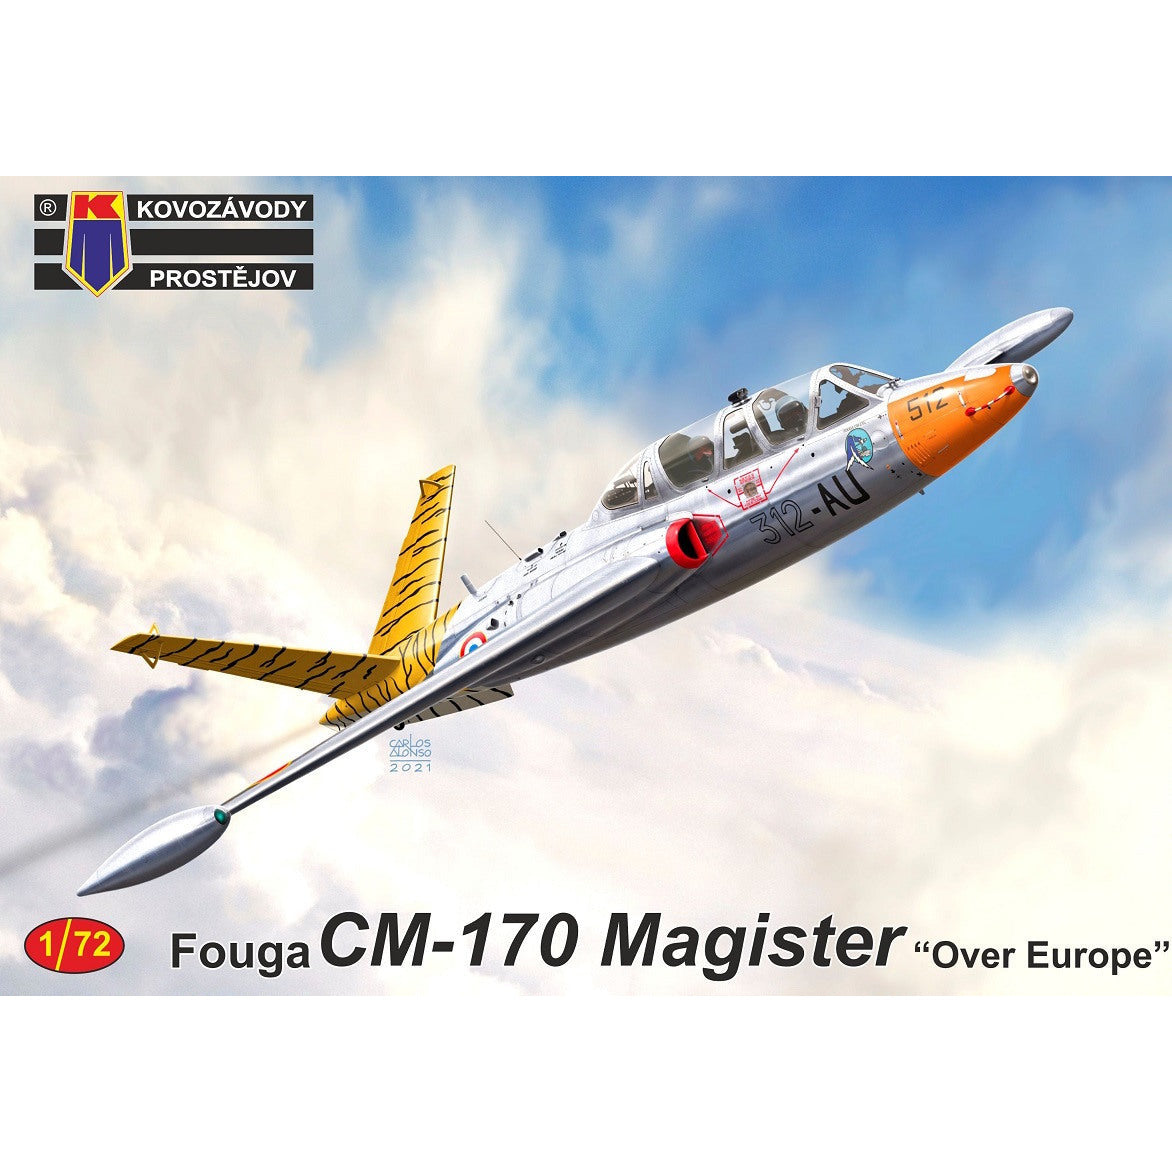 KOVOZAVODY 1/72 Fouga CM-170 Magister "Over Europe